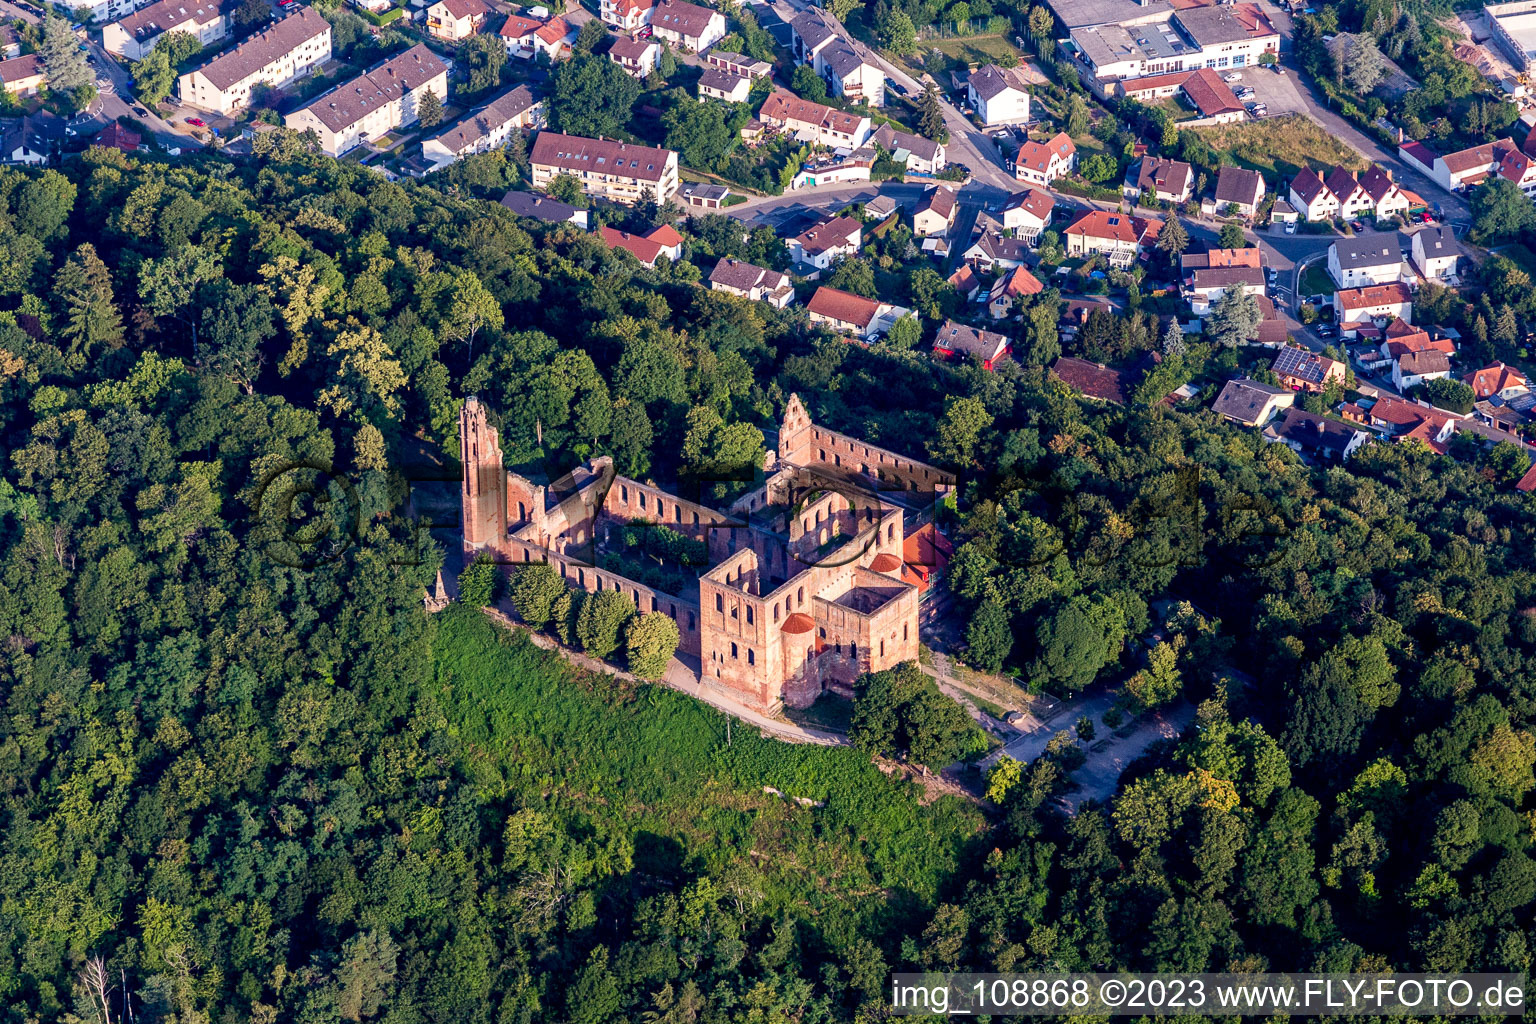 Kloster Limburg im Ortsteil Grethen in Bad Dürkheim im Bundesland Rheinland-Pfalz, Deutschland aus der Luft